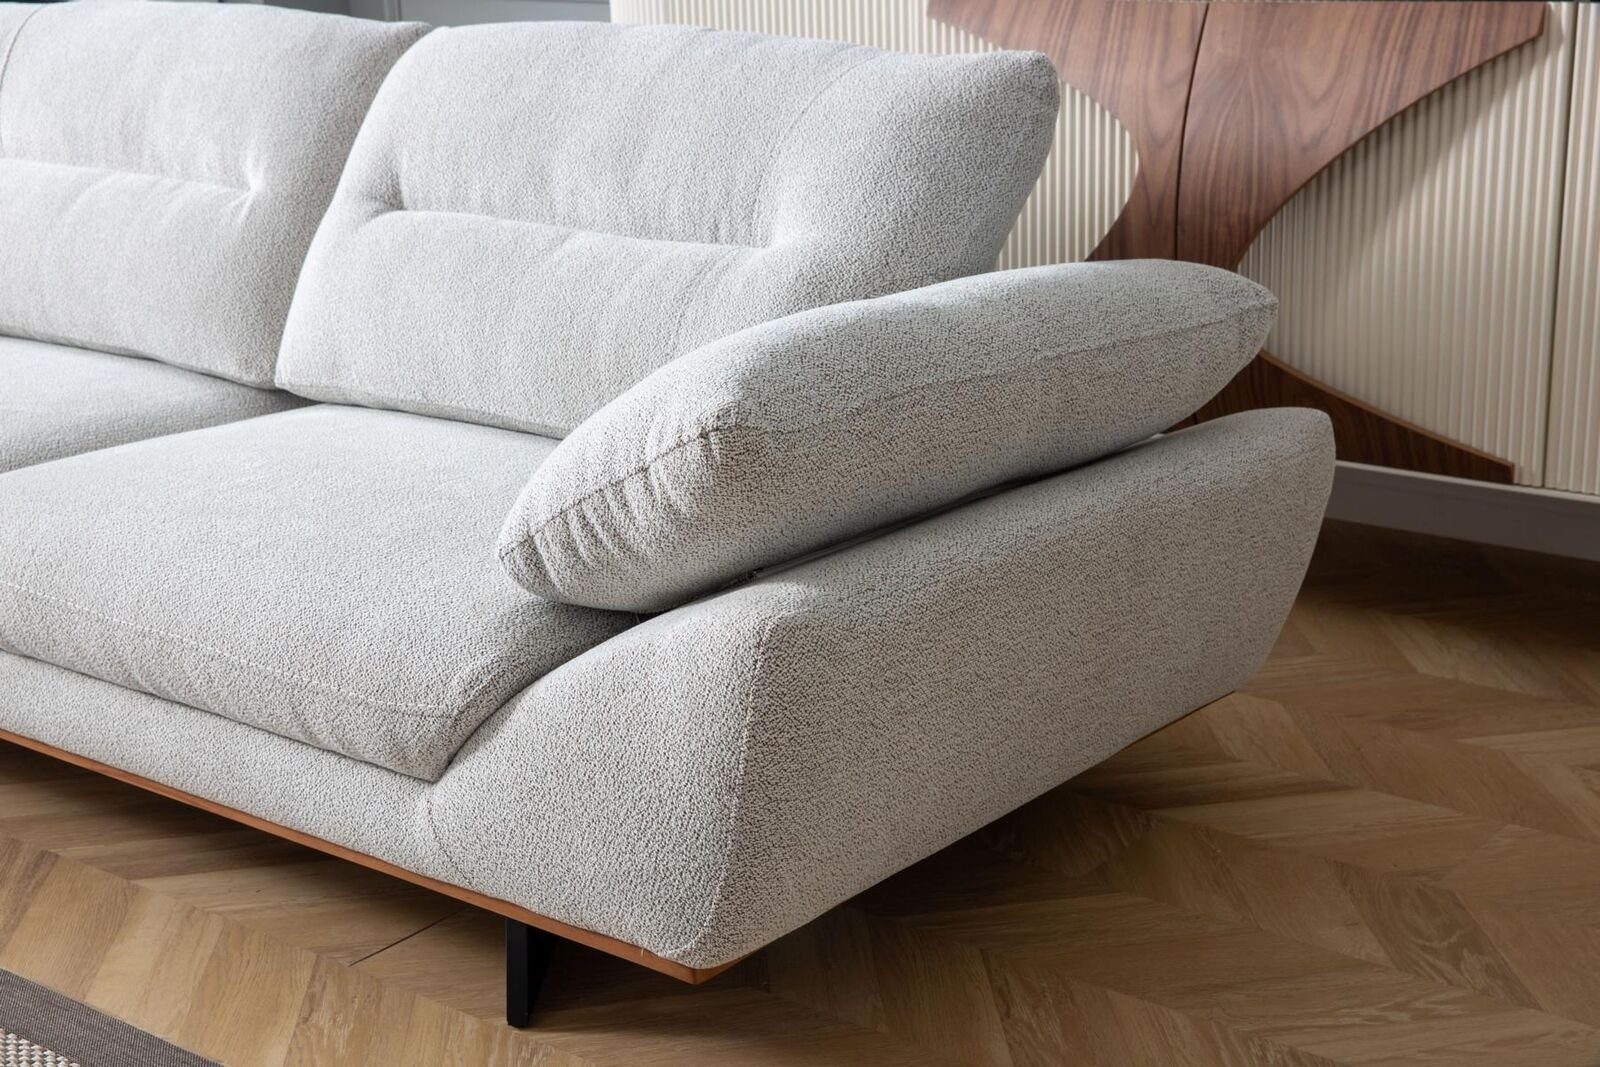 JVmoebel 3-Sitzer Designer Teile, Europa wohnzimmer, Sitzer 3 Weiß Sofas in Sofa 1 Polster Made Couch Design in